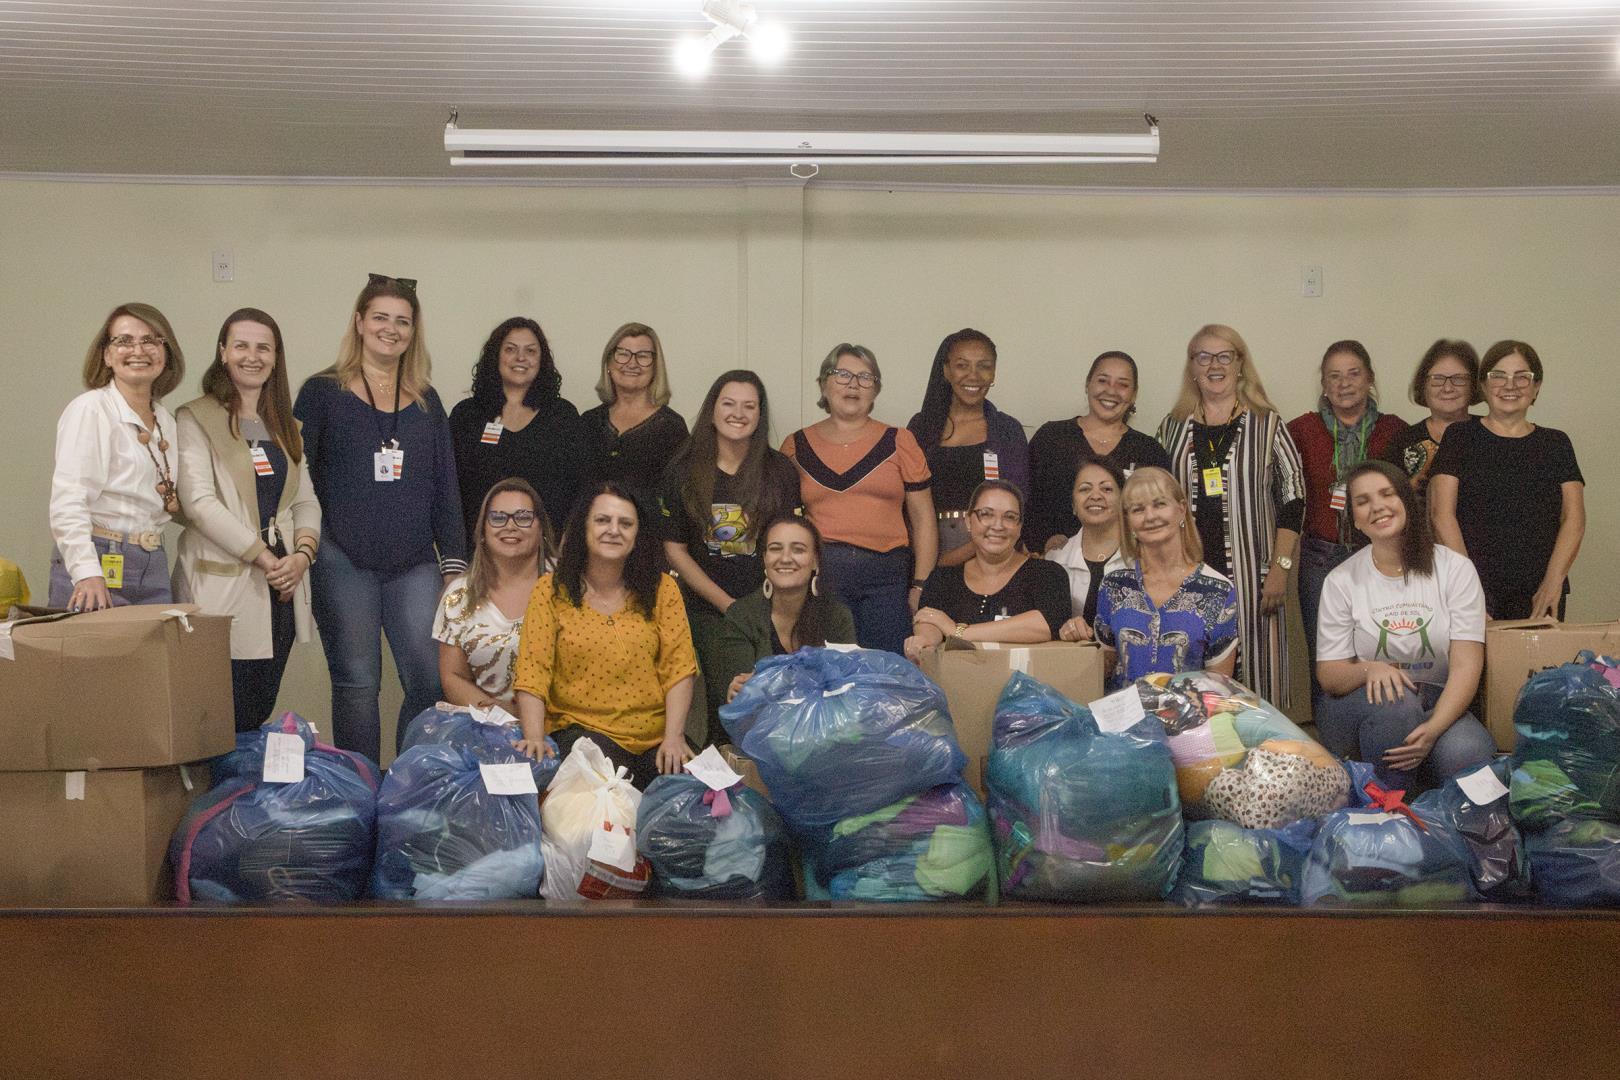 Mais de 1 800 roupas são doadas pelo Grupo de Mulheres Voluntárias Ellos da IENH